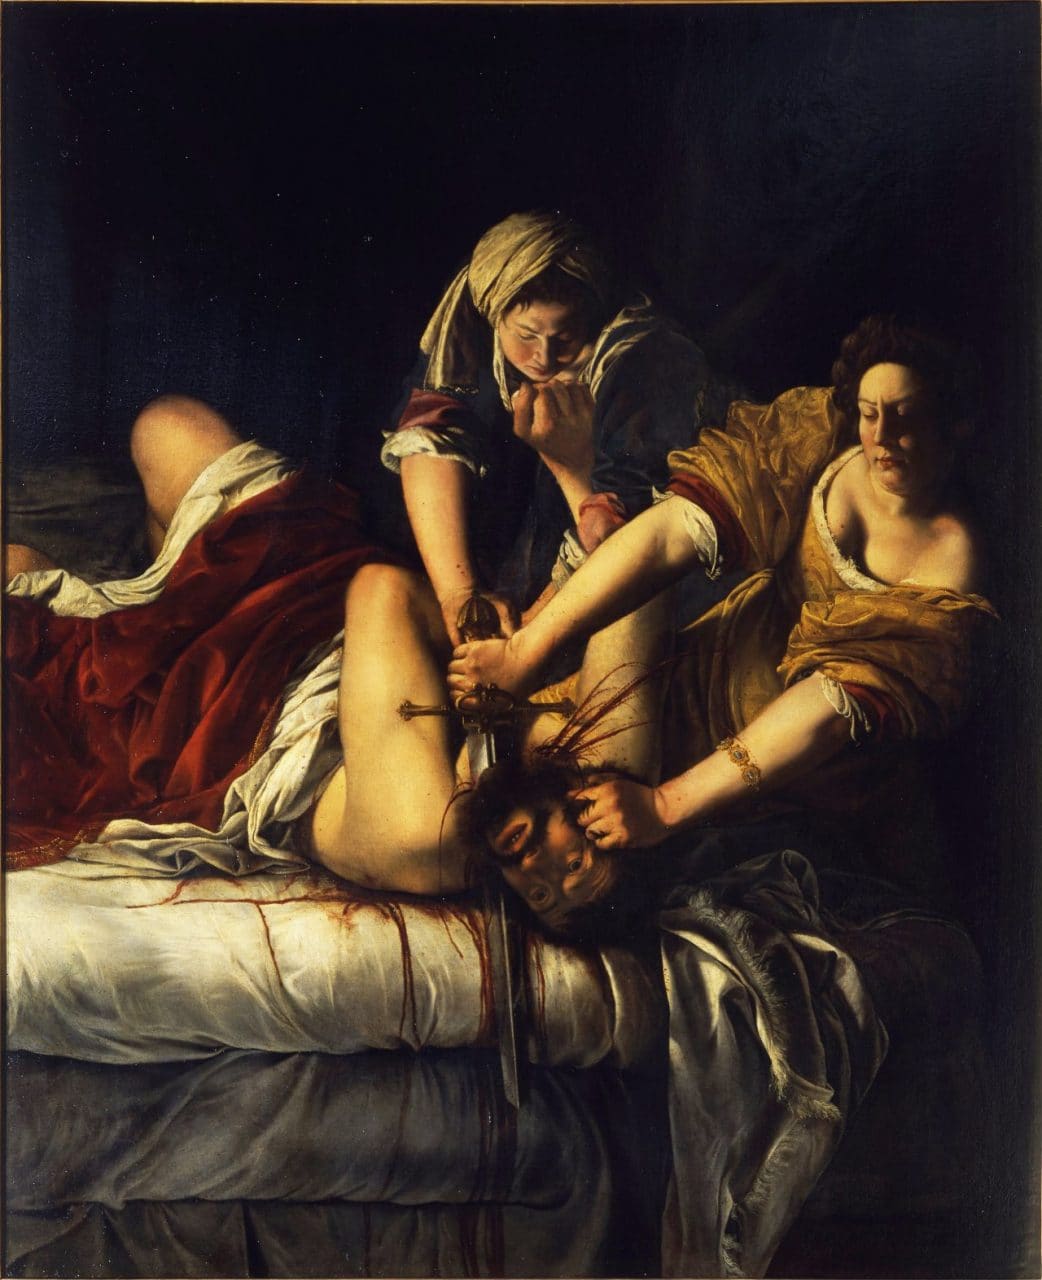 유디트와 홀로페르네스(Judith and Holofernes) - 아르테미시아 젠틸레스키(Artemisia Gentileschi), 1620